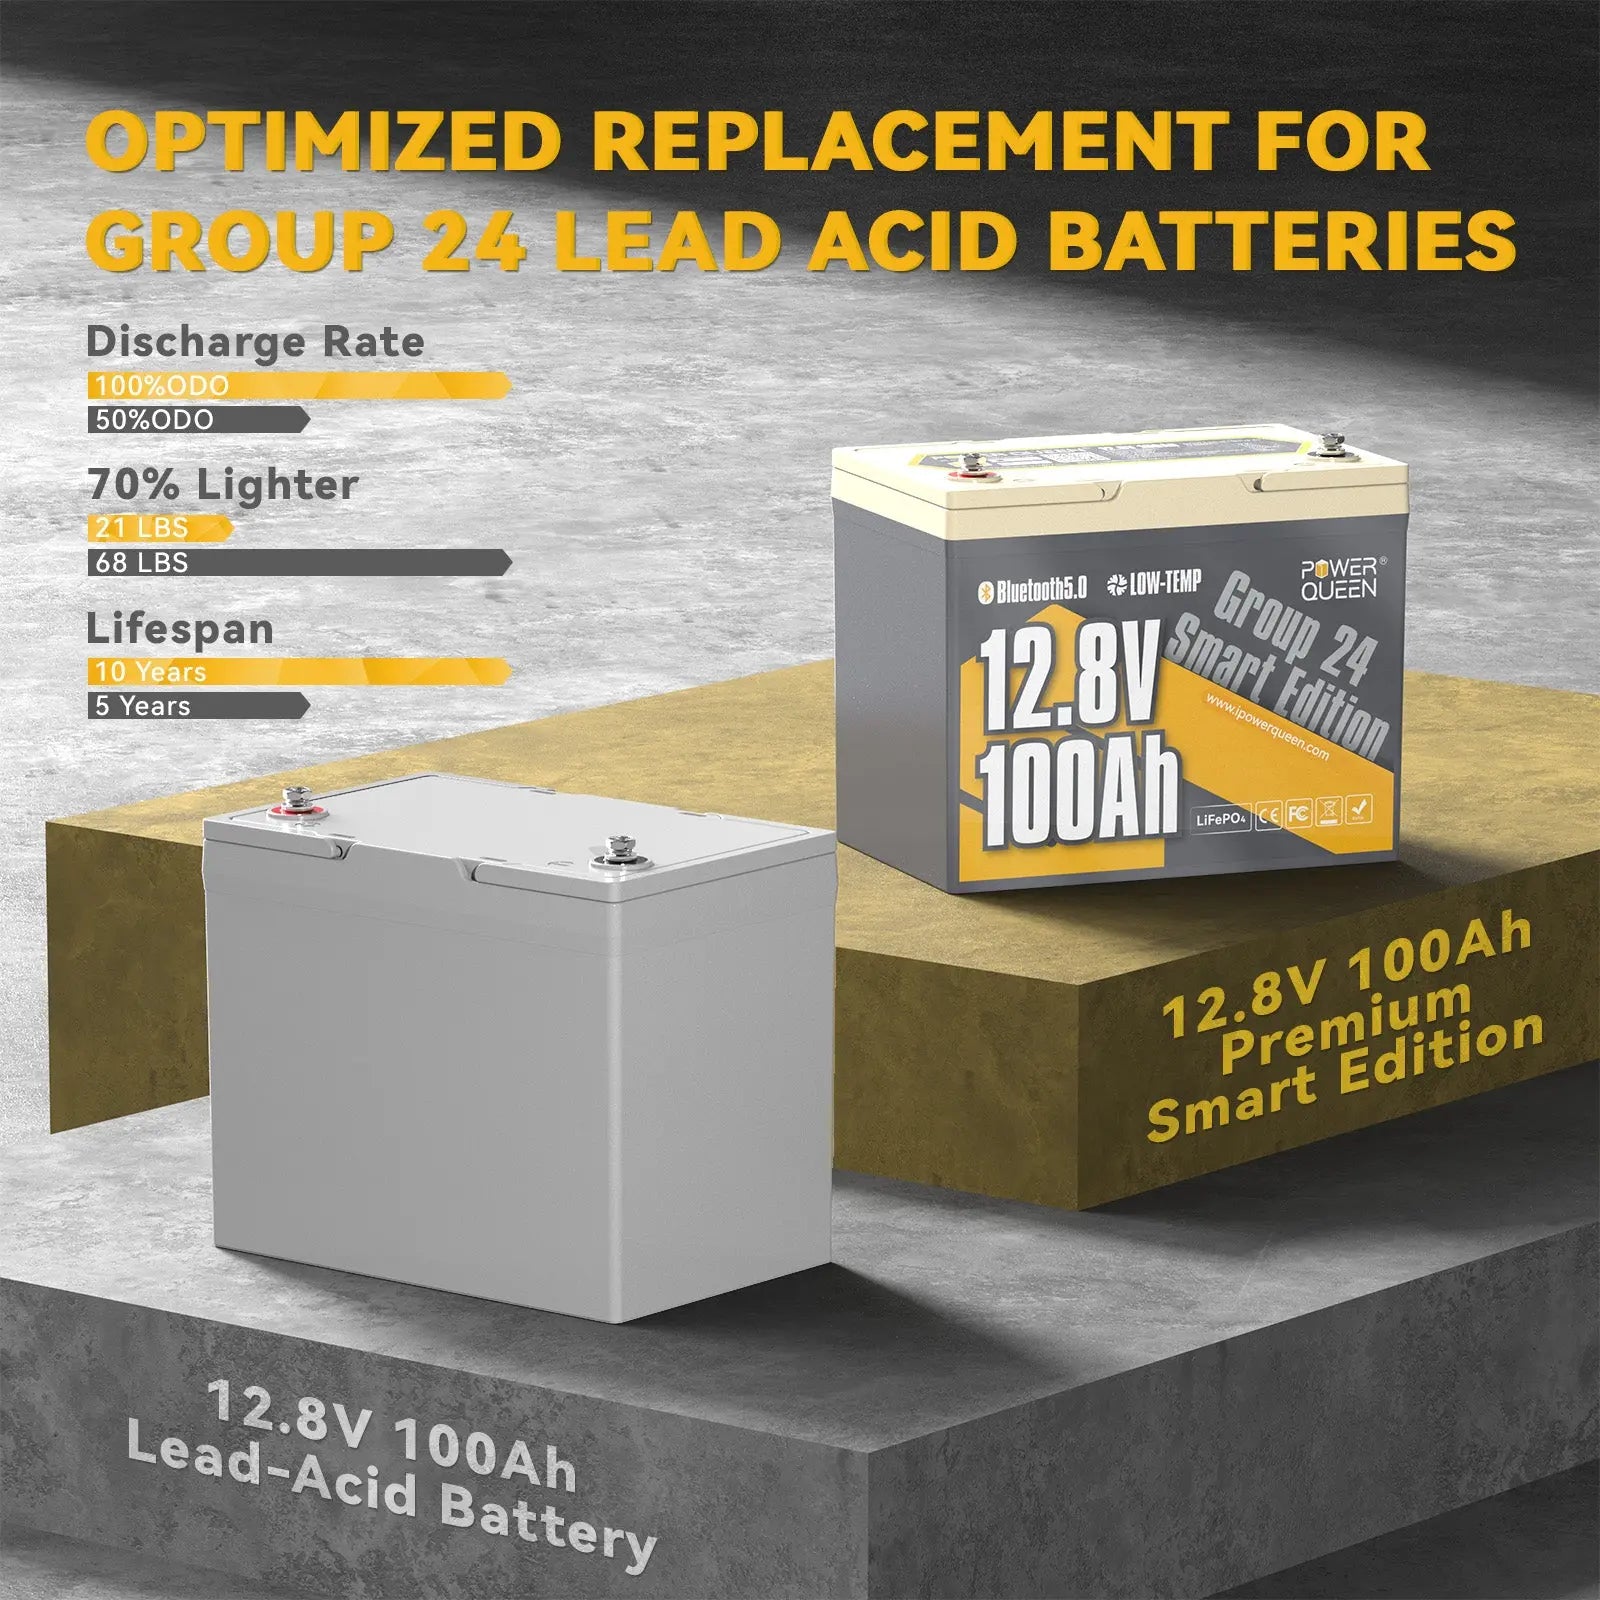 12.8V 100Ah smart deep cycle lithium battery vs 12.8V 100Ah lead-acid battery